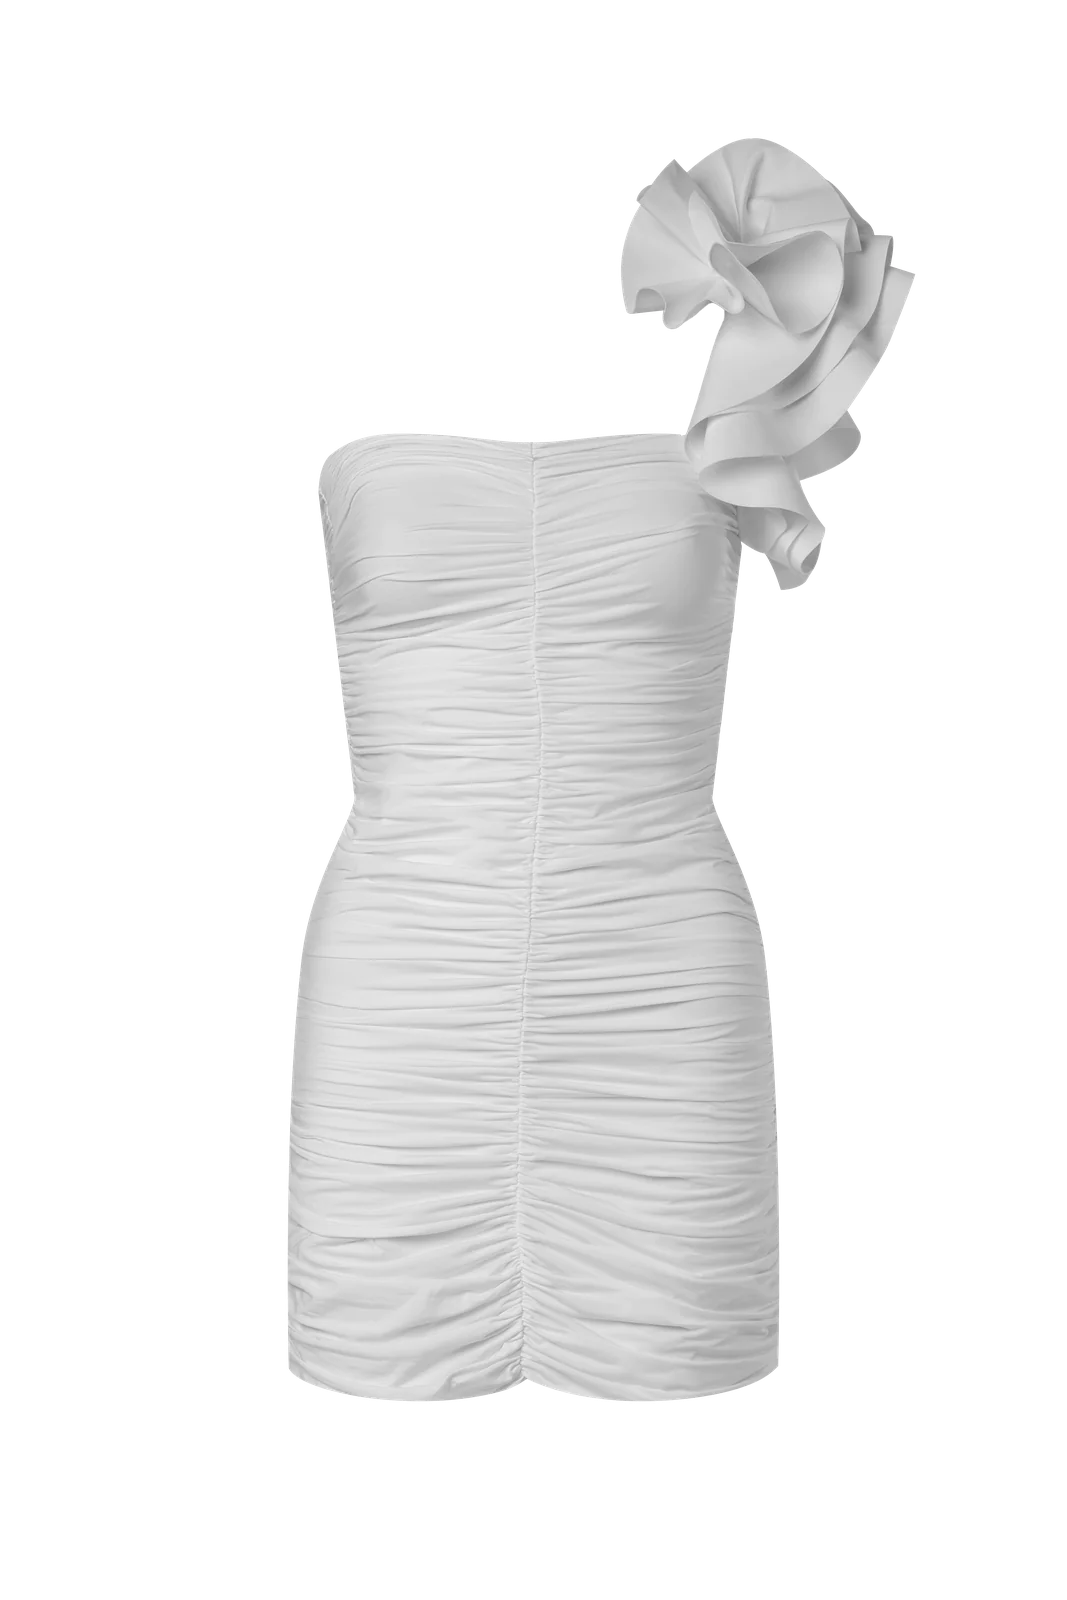 MAYGEL CORONEL EQUINOCCIO DRESS IN OFF WHITE